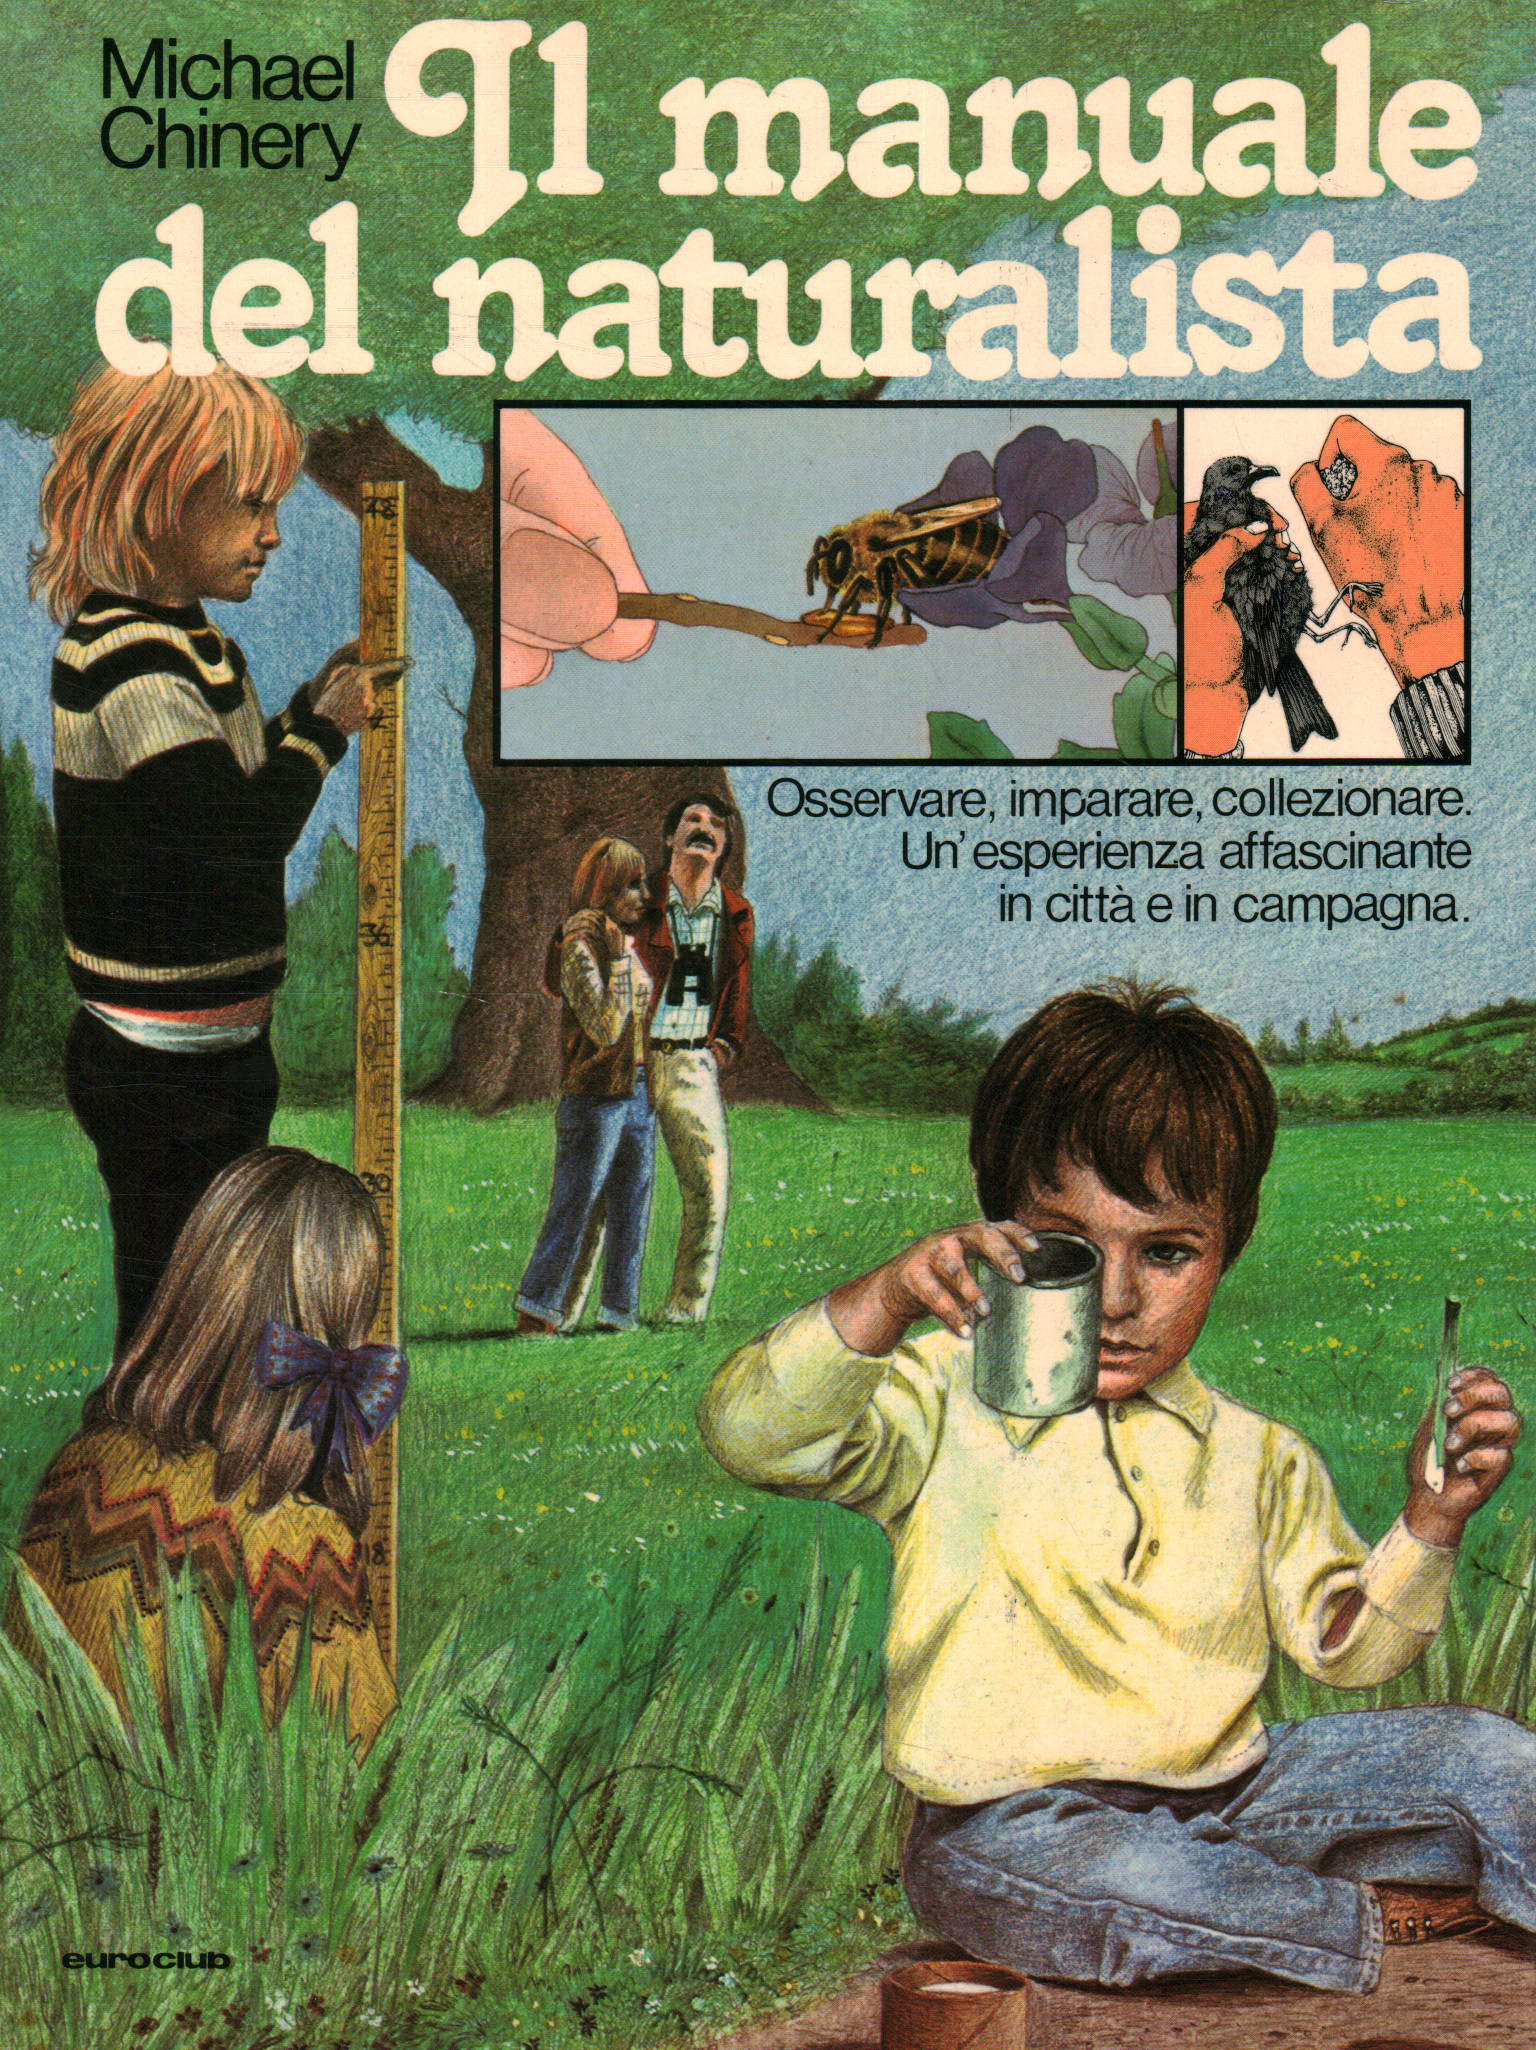 El manual del naturalista